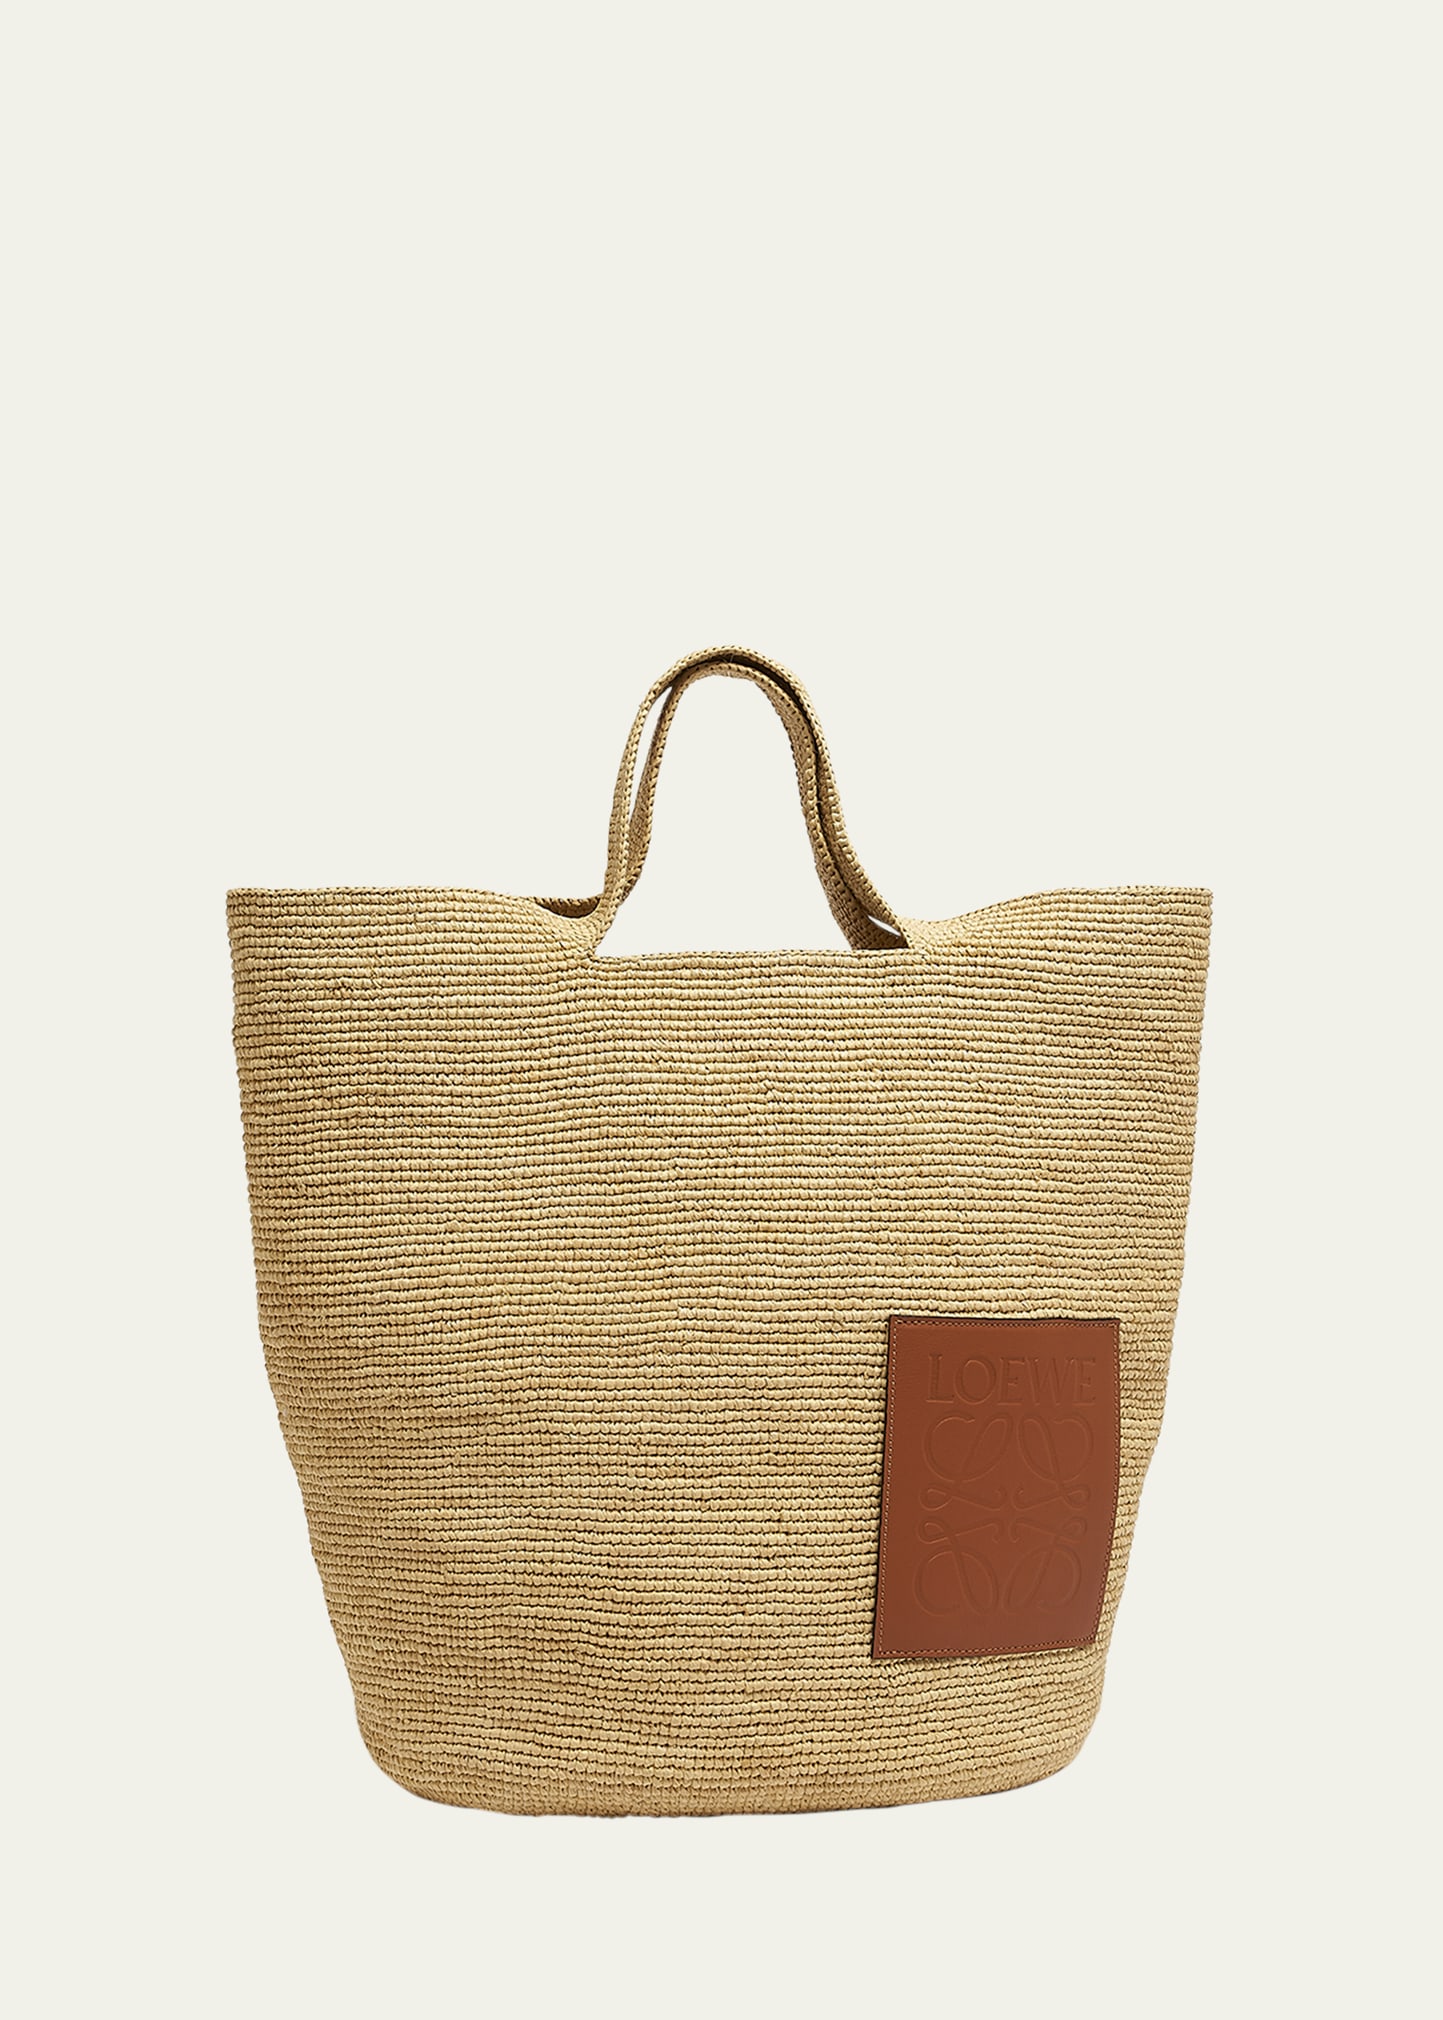 Loewe Men's Slit Large Raffia And Calfskin Tote Bag In Natural/tan